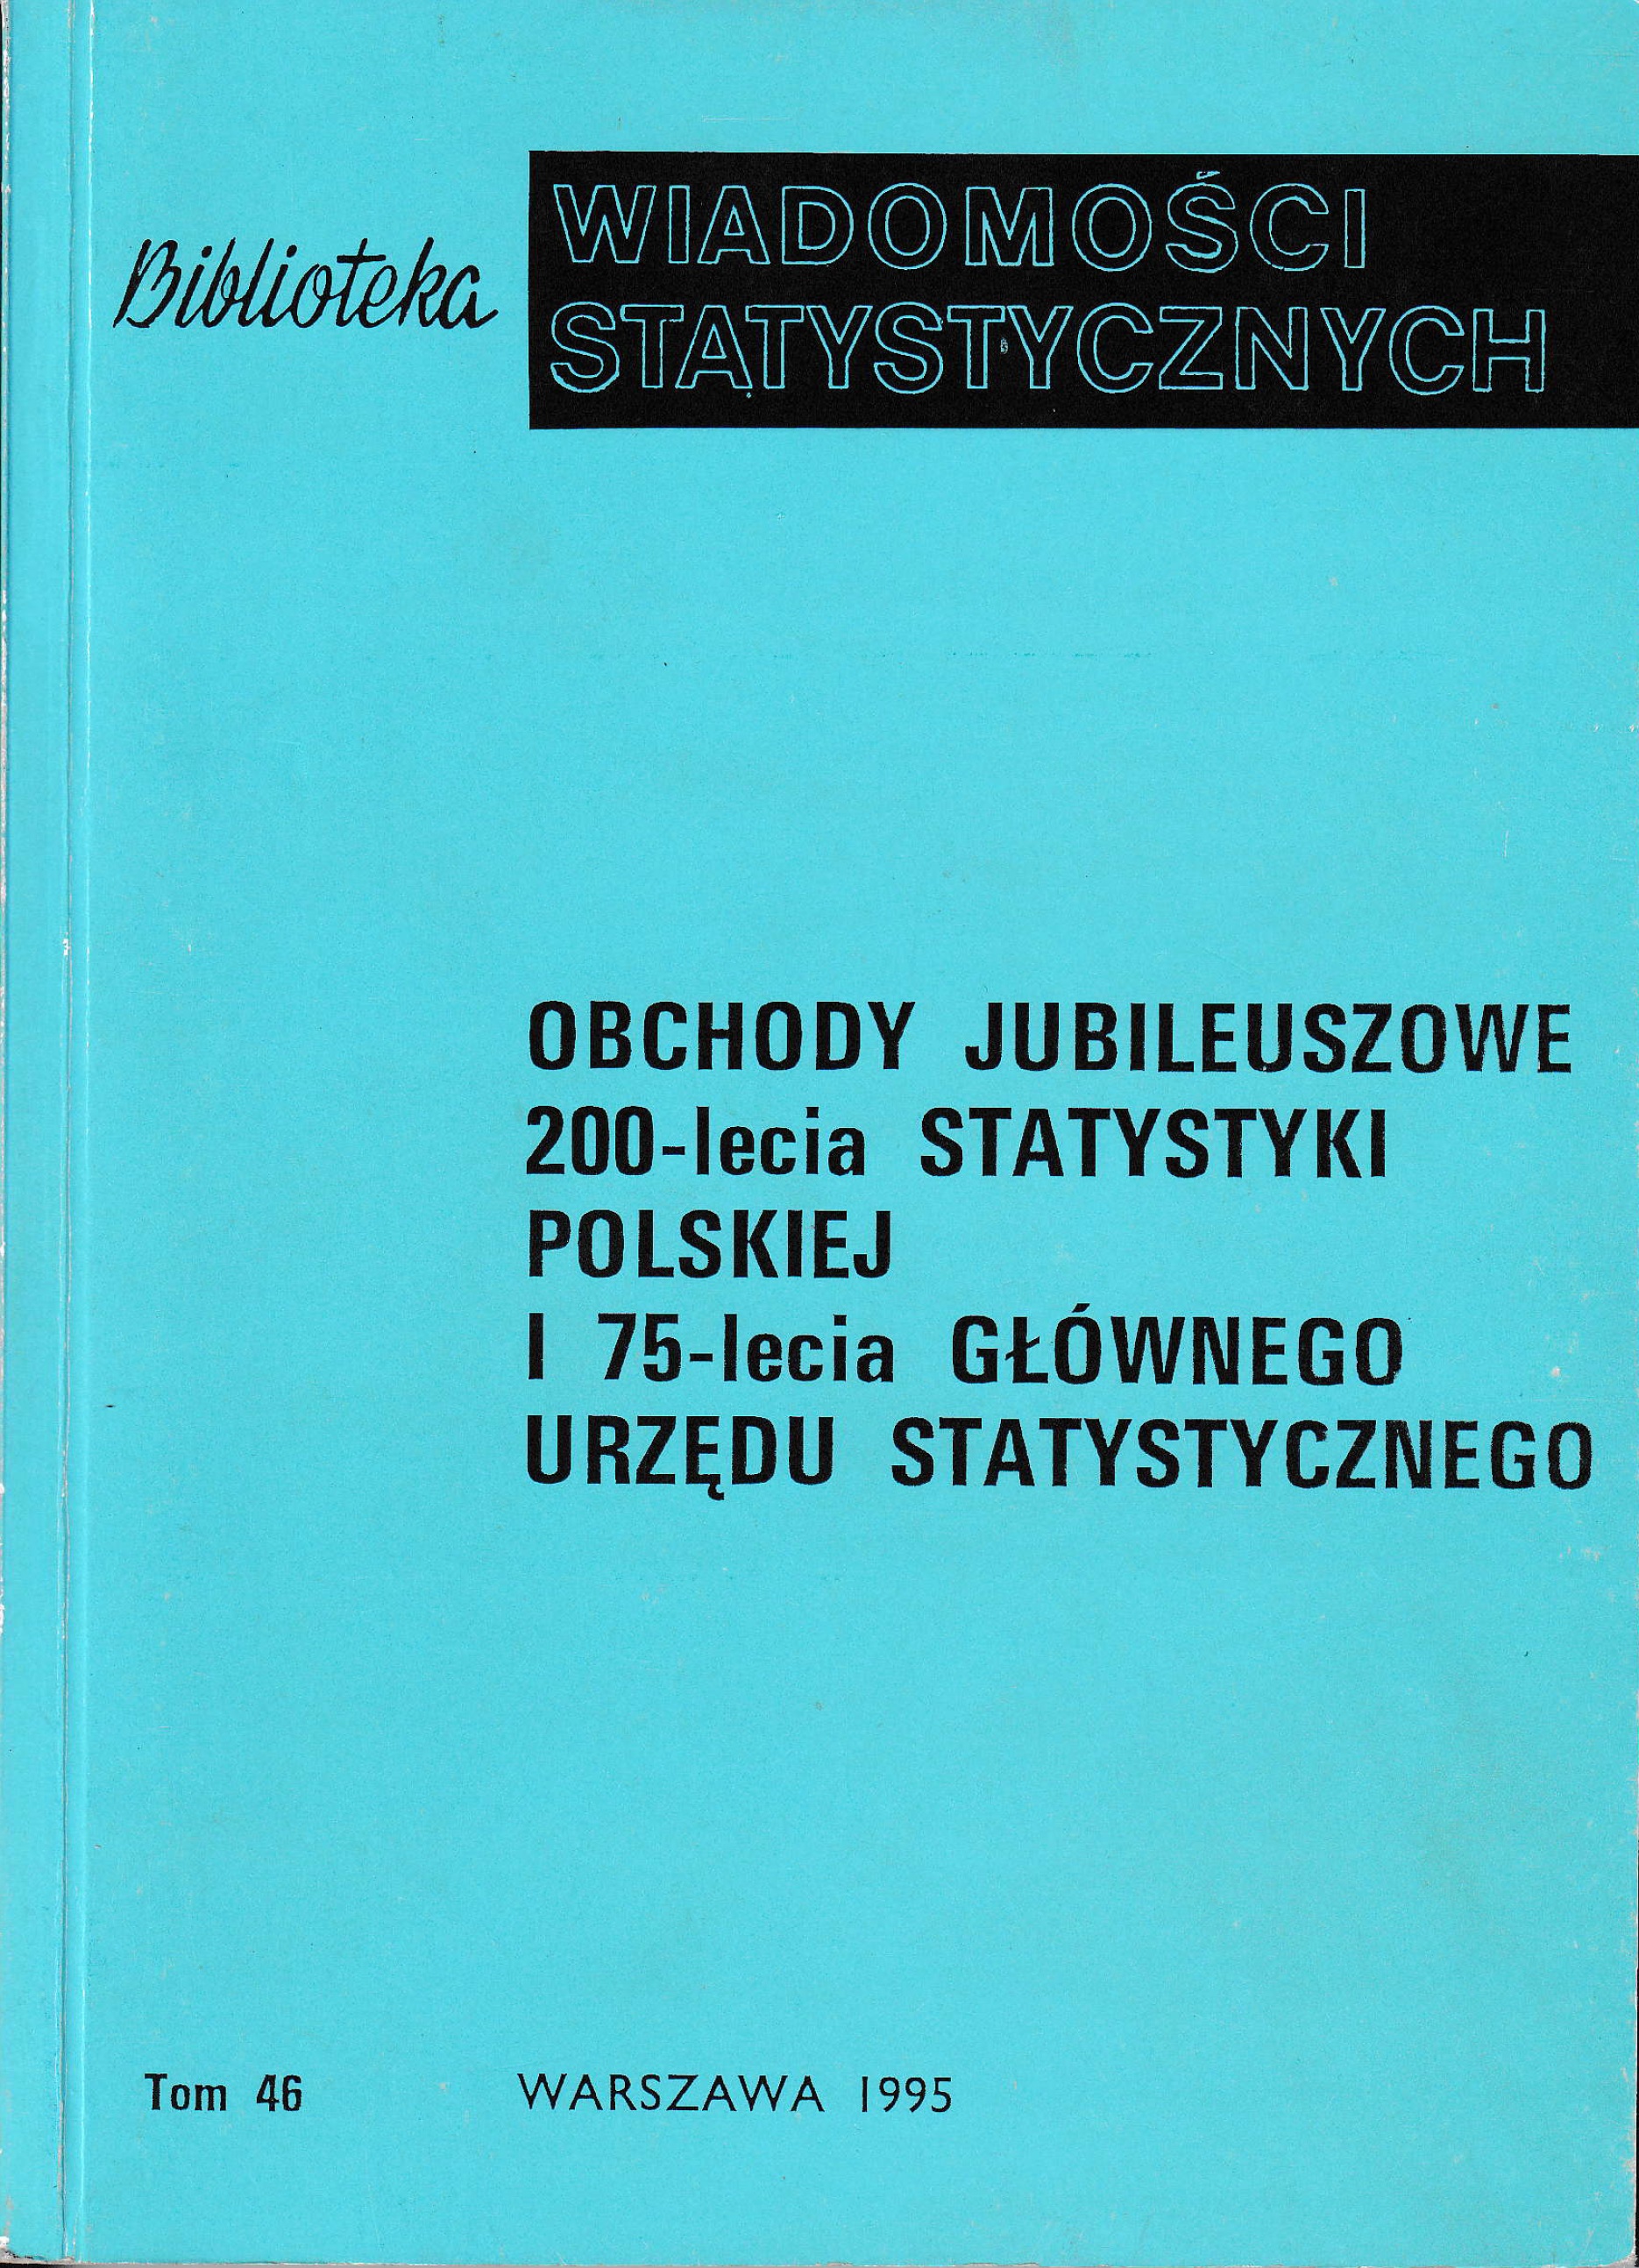 Okładka monografi -Obchody jubileuszowe 200-lecia statystyki polskiej i 75-lecia Głównego Urzędu Statystycznego